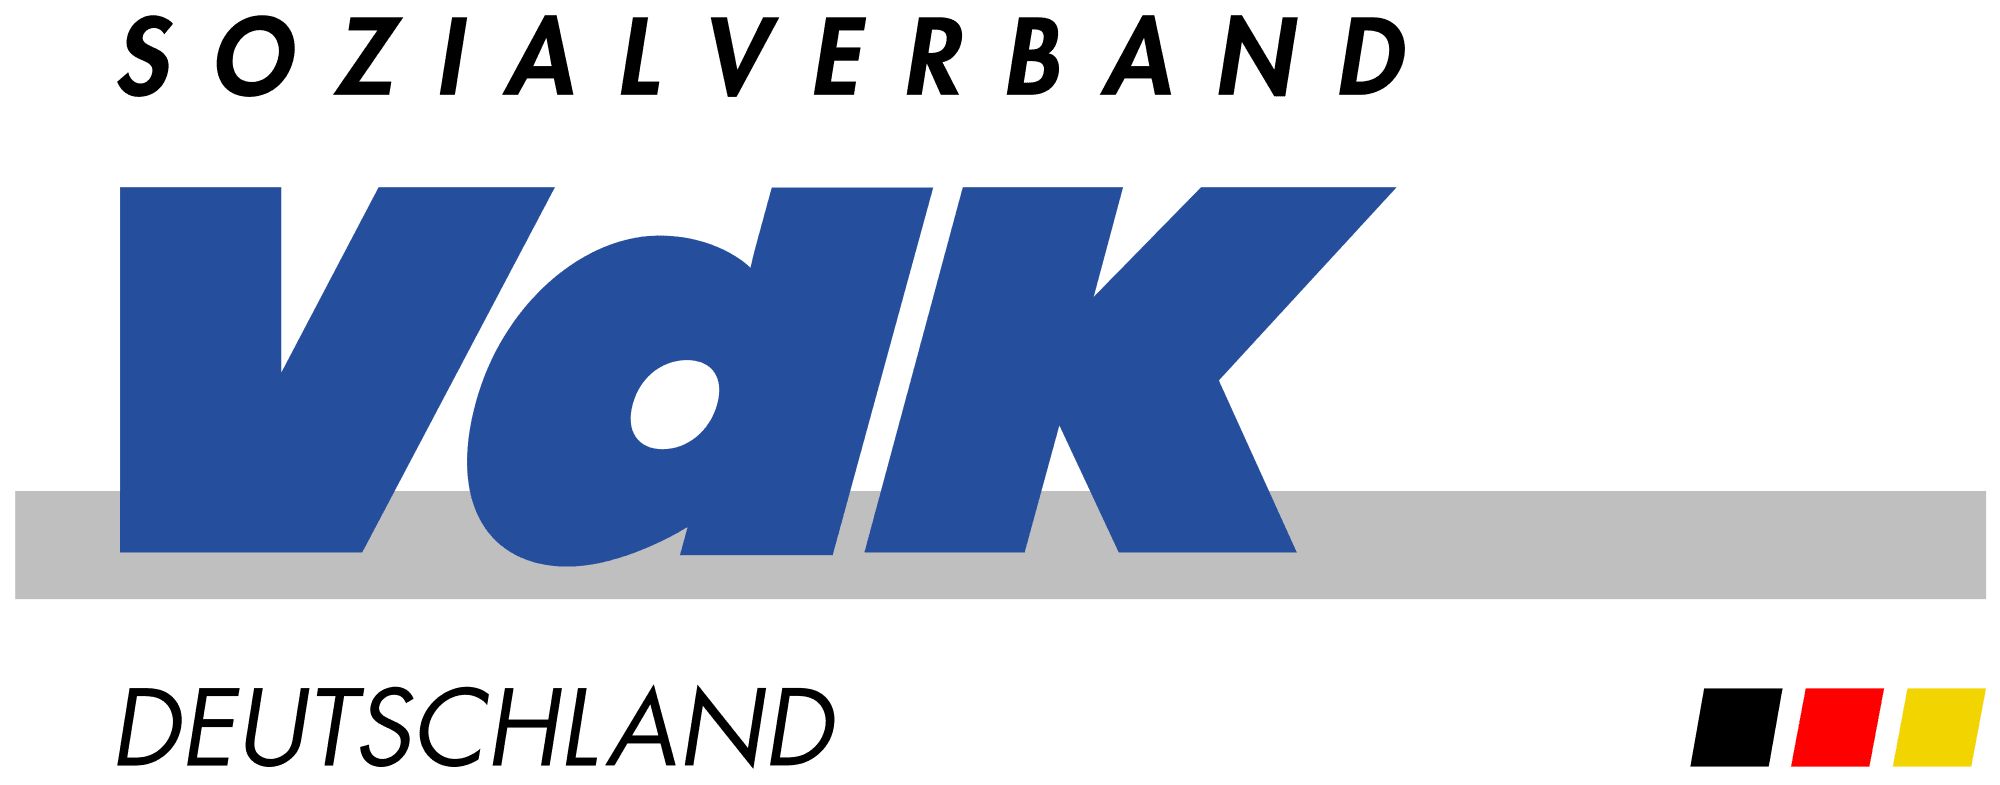 Sozialverband VdK Deutschland logo